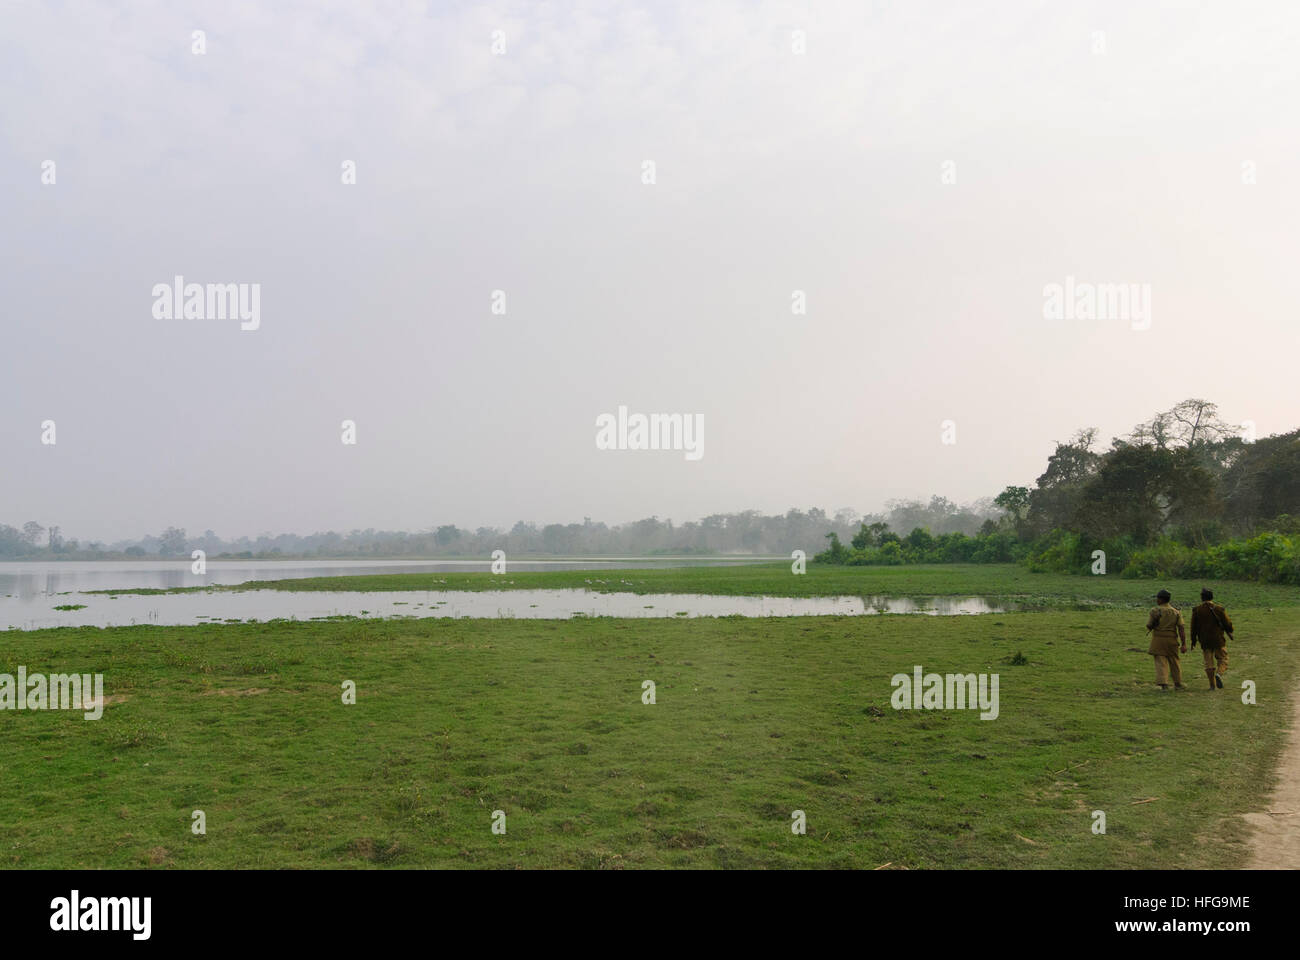 Le parc national de Kaziranga : Park ranger sur un lac, de l'Assam, Inde Banque D'Images